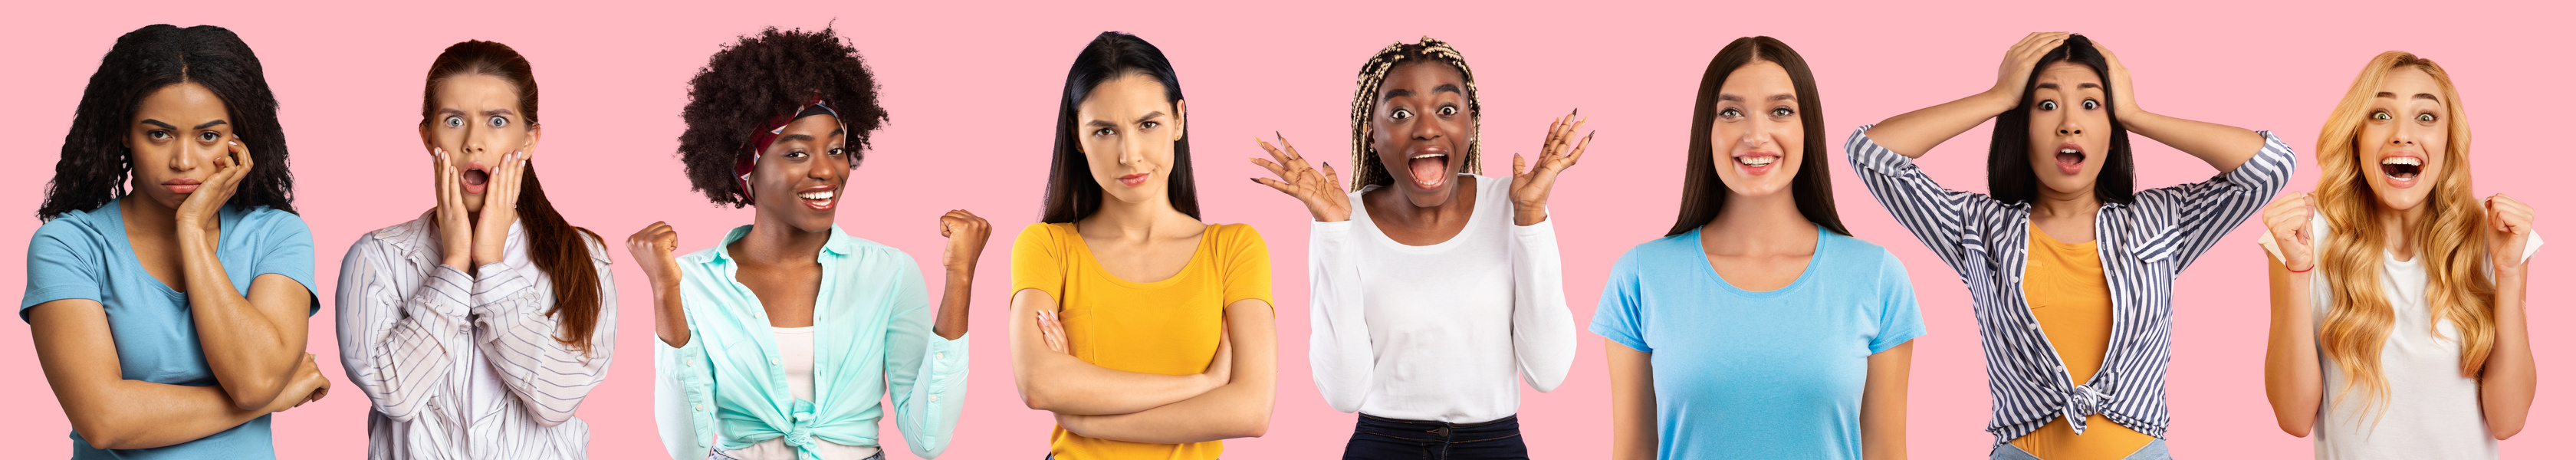 Millennial Diverse Ethnicity Women Express Different Facial Emotions